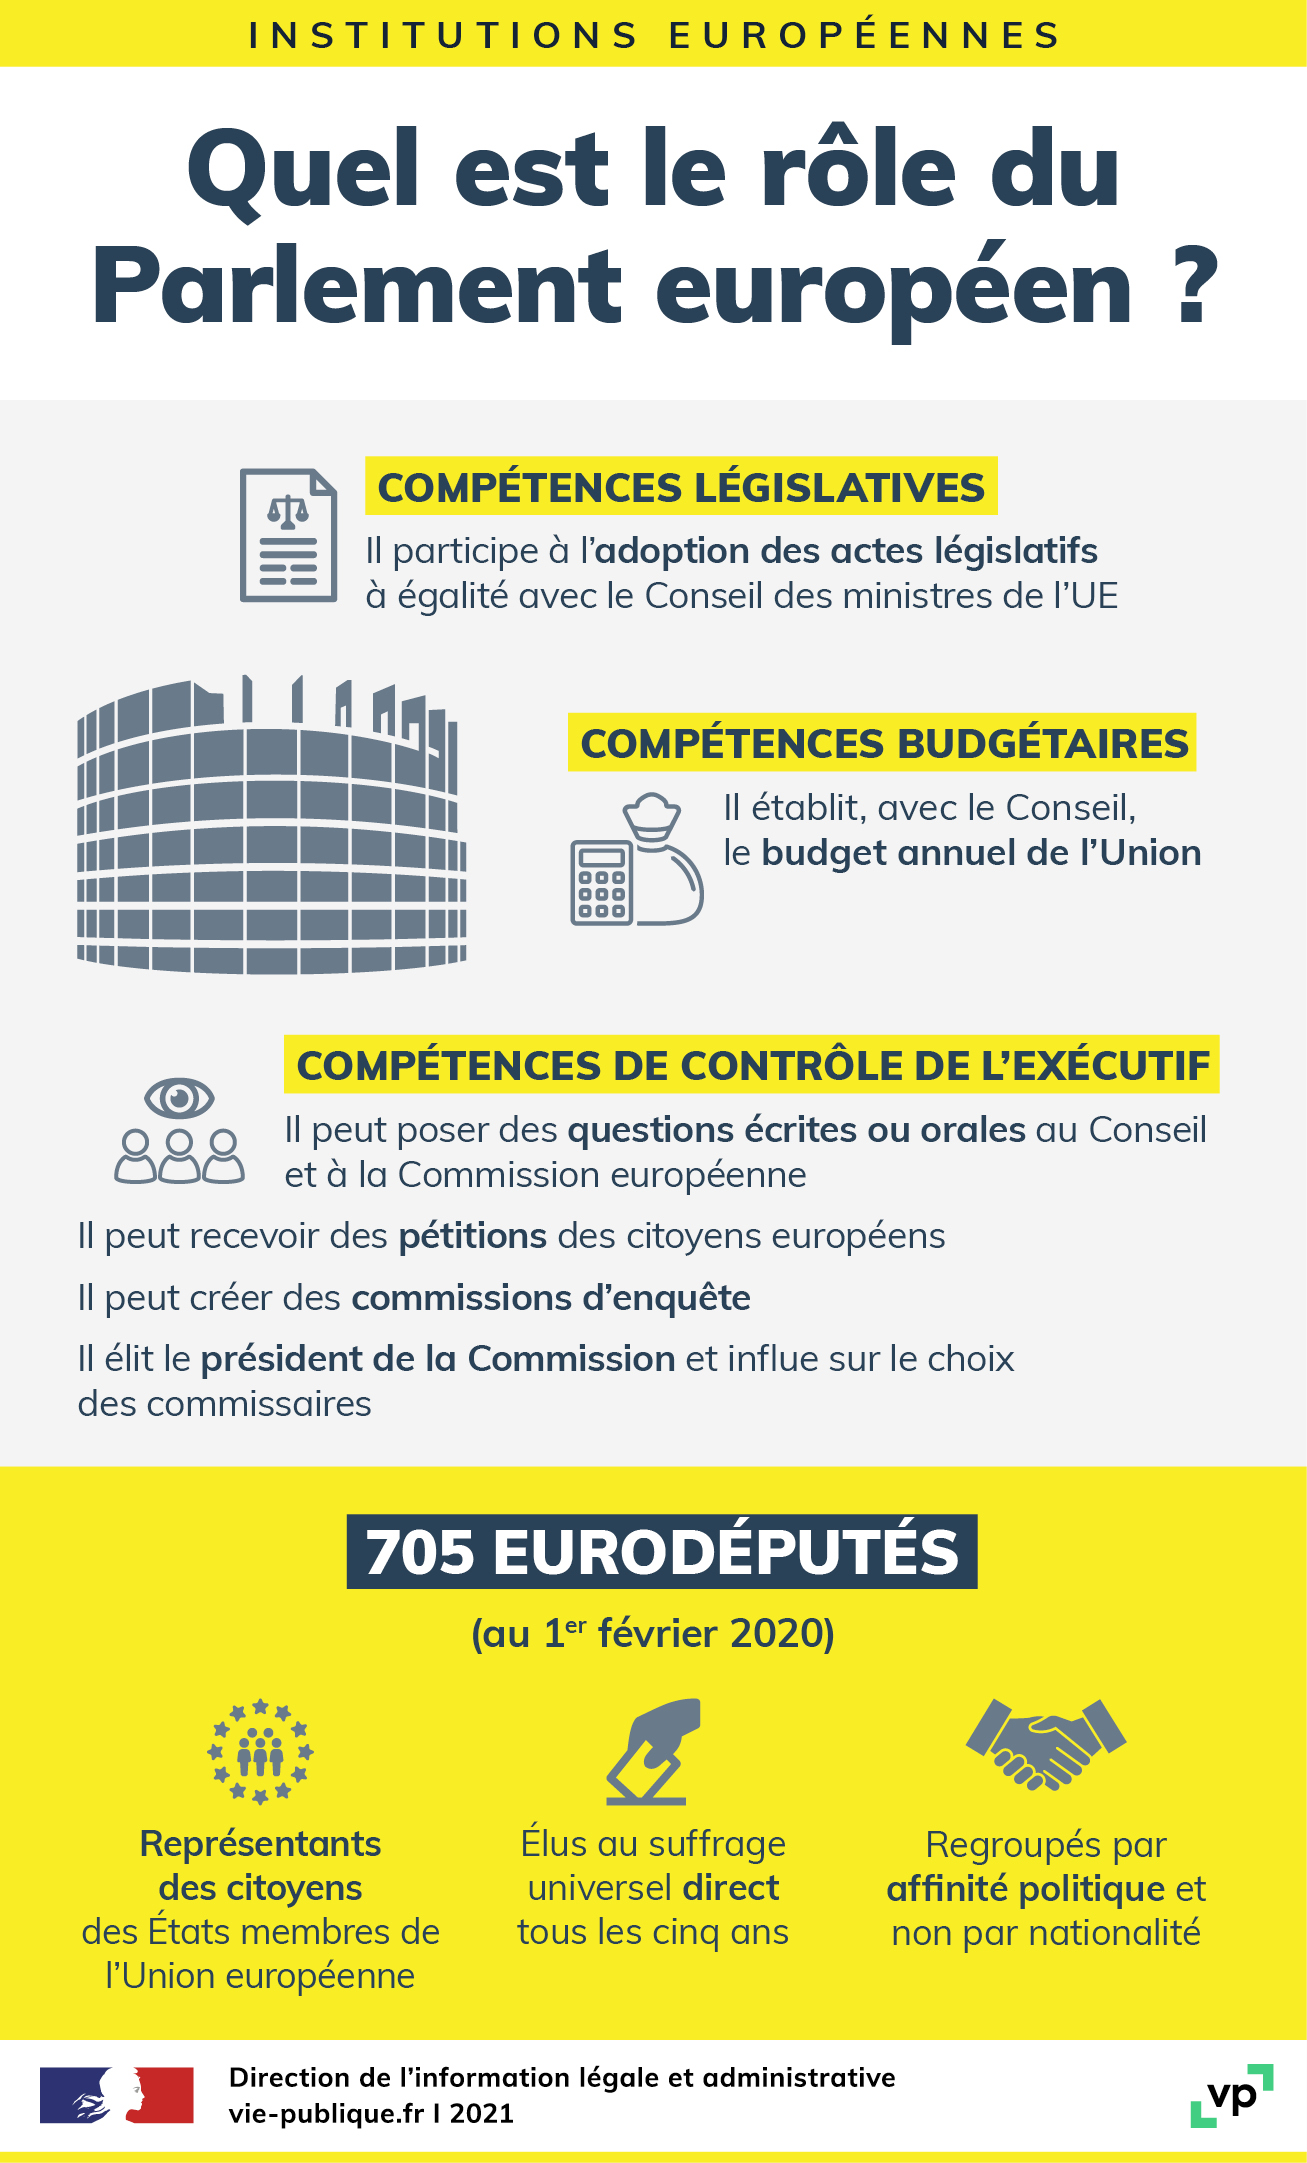 role du parlement europeen